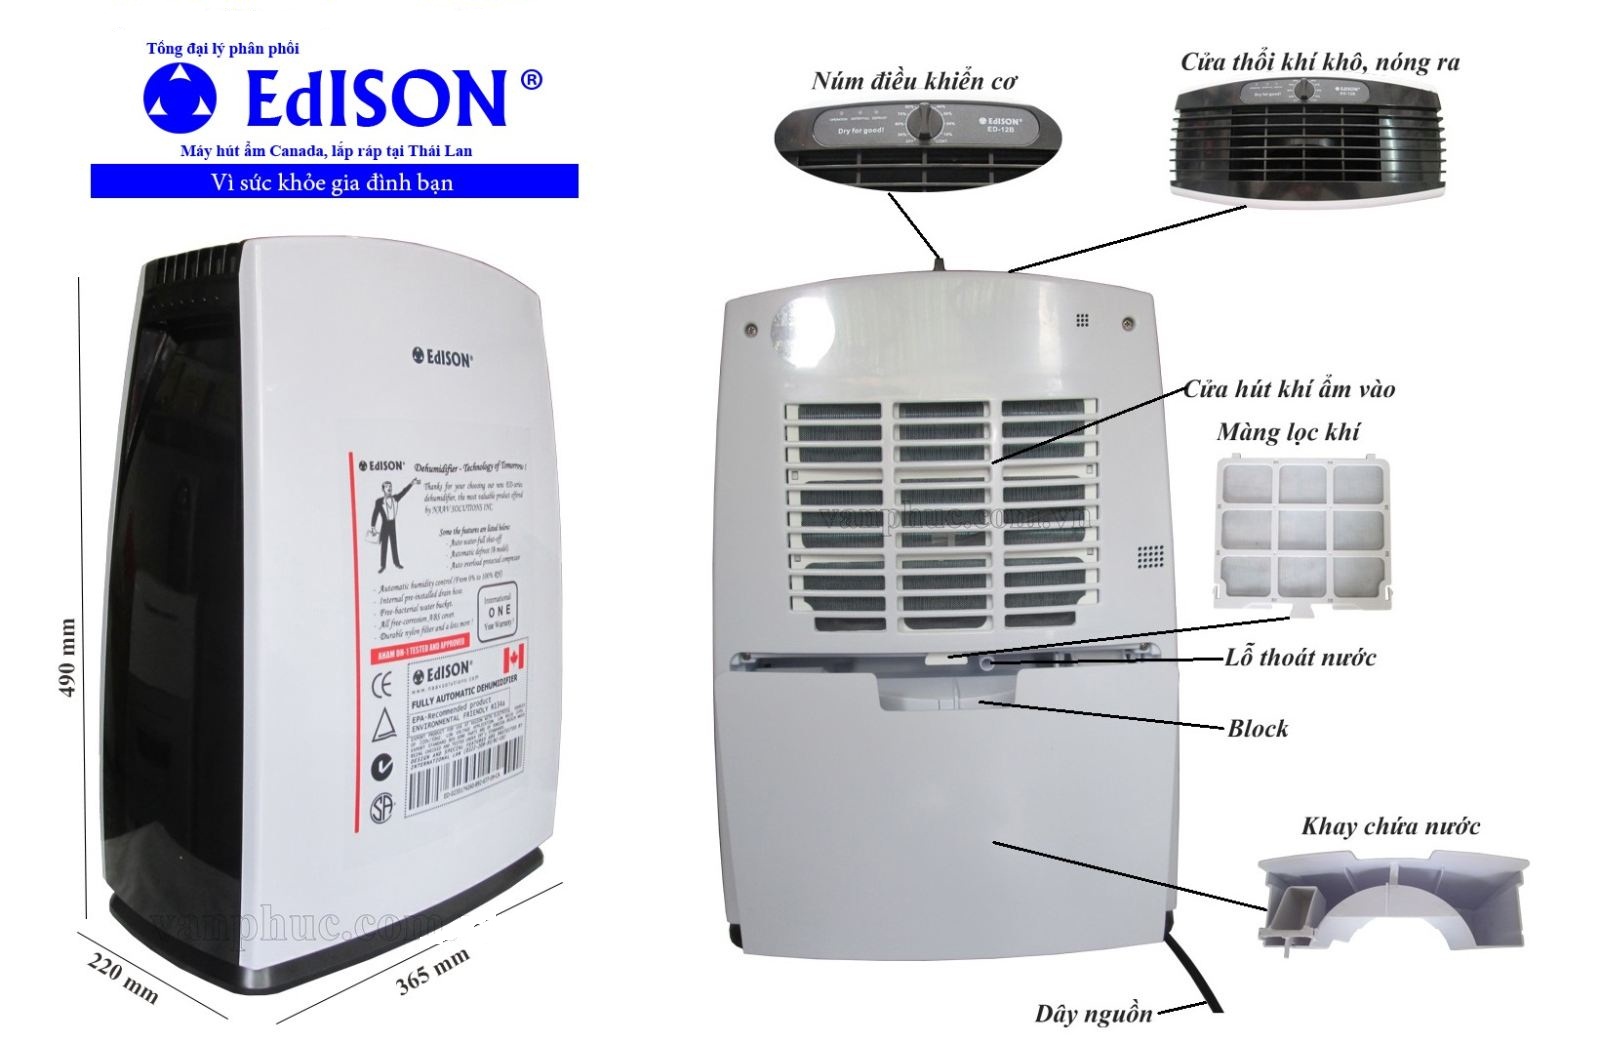 Dịch vụ sửa máy hút ẩm Edison tại nhà Hà Nội của chúng tôi: